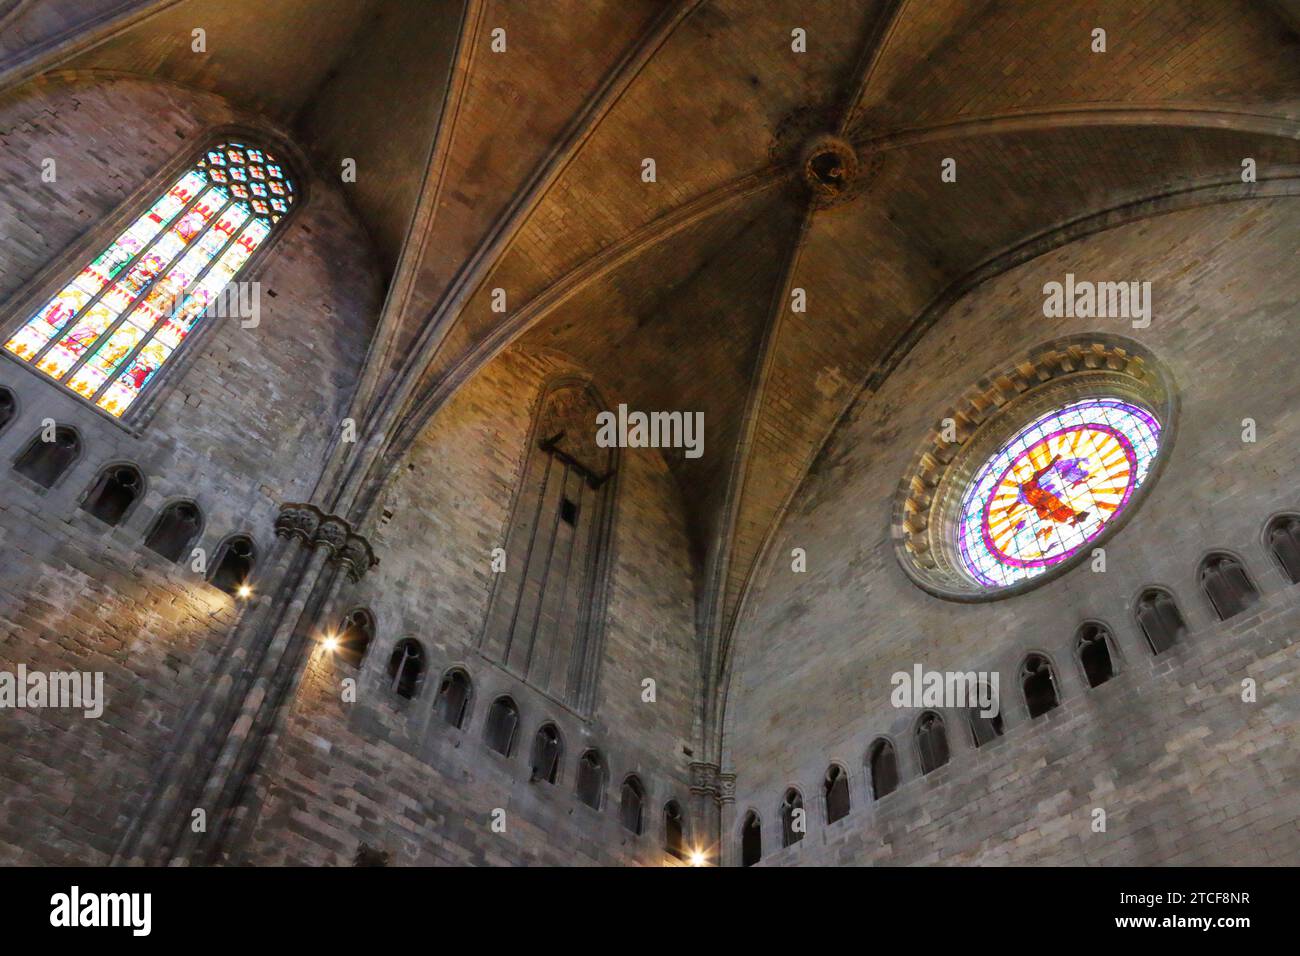 Espectaculares vistas interiores de la Catedral de Girona Foto de stock